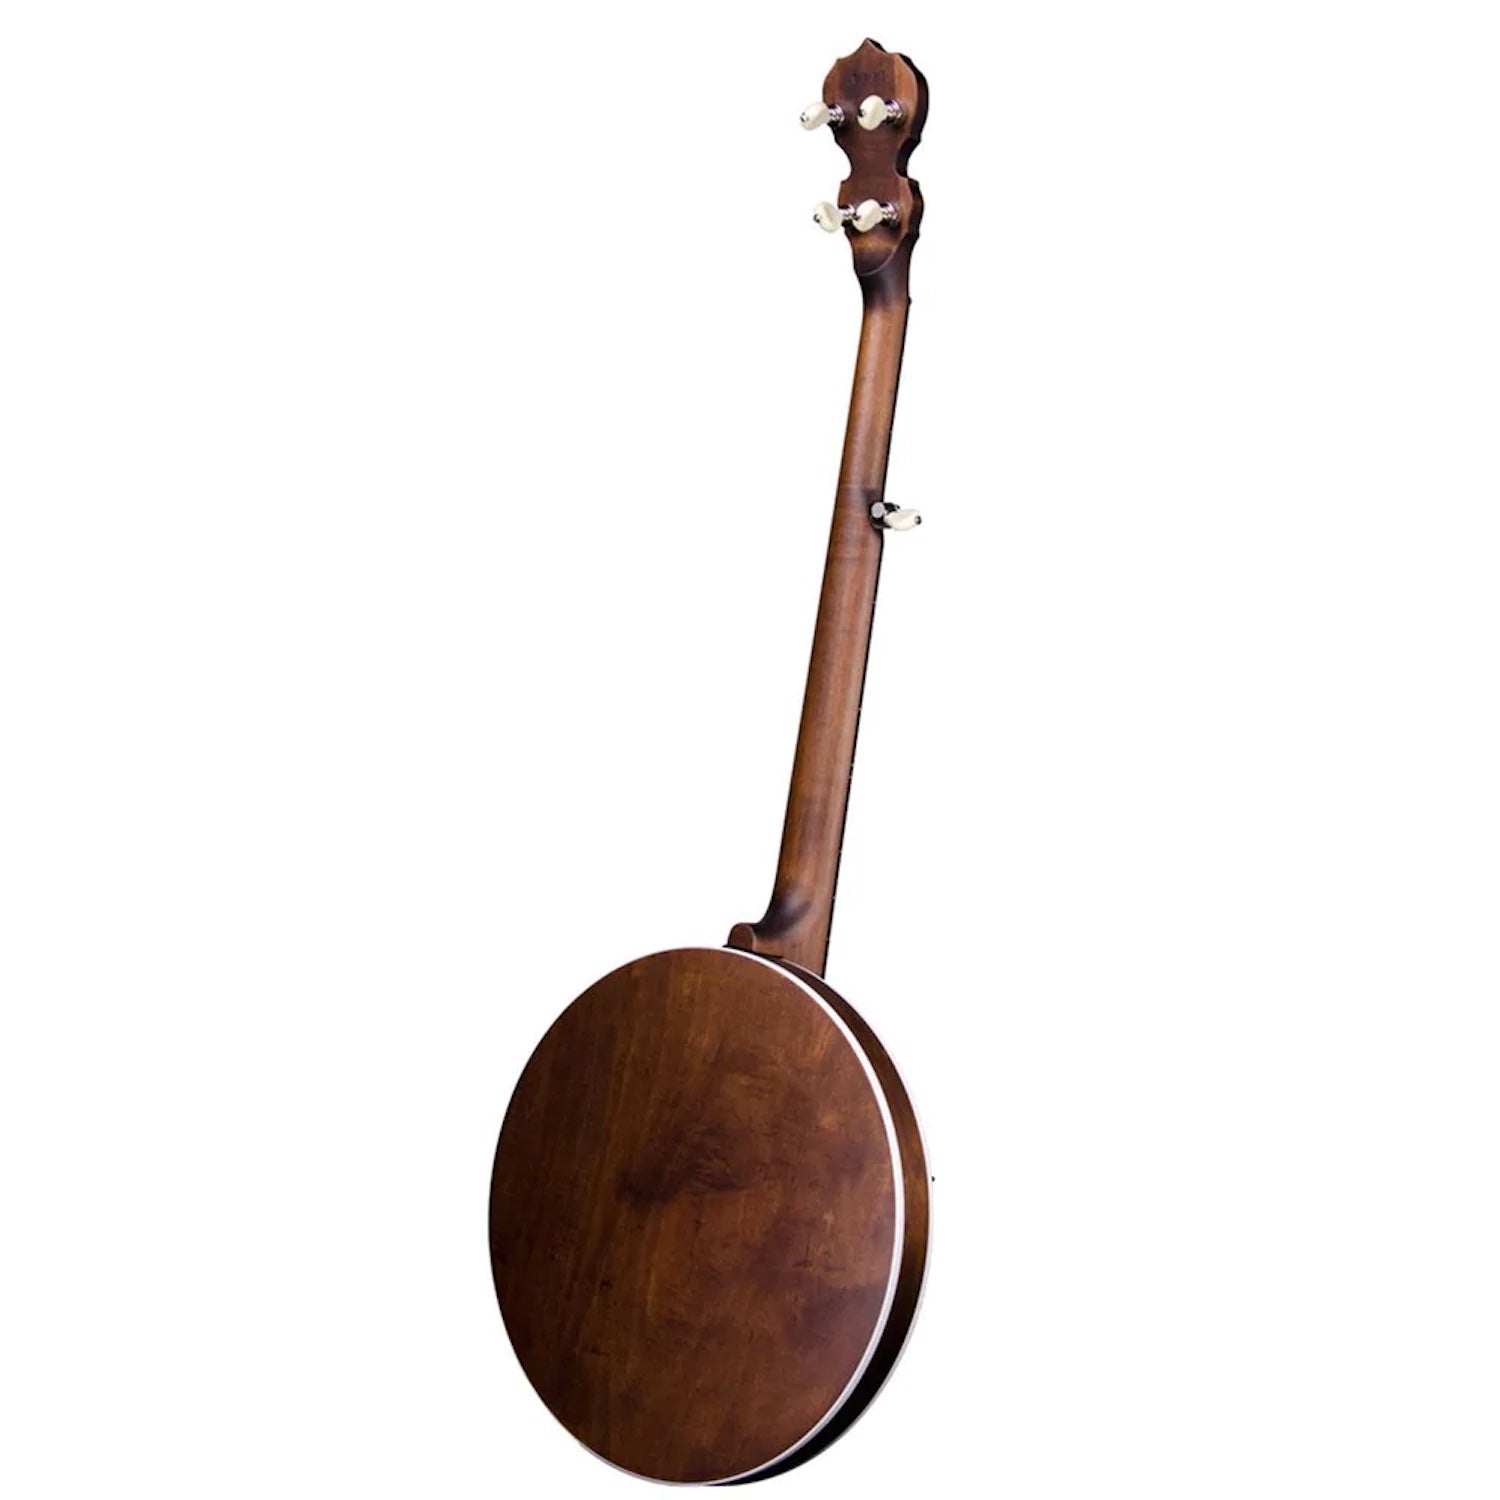 Deering Sierra Maple 5-String Banjo w/Case